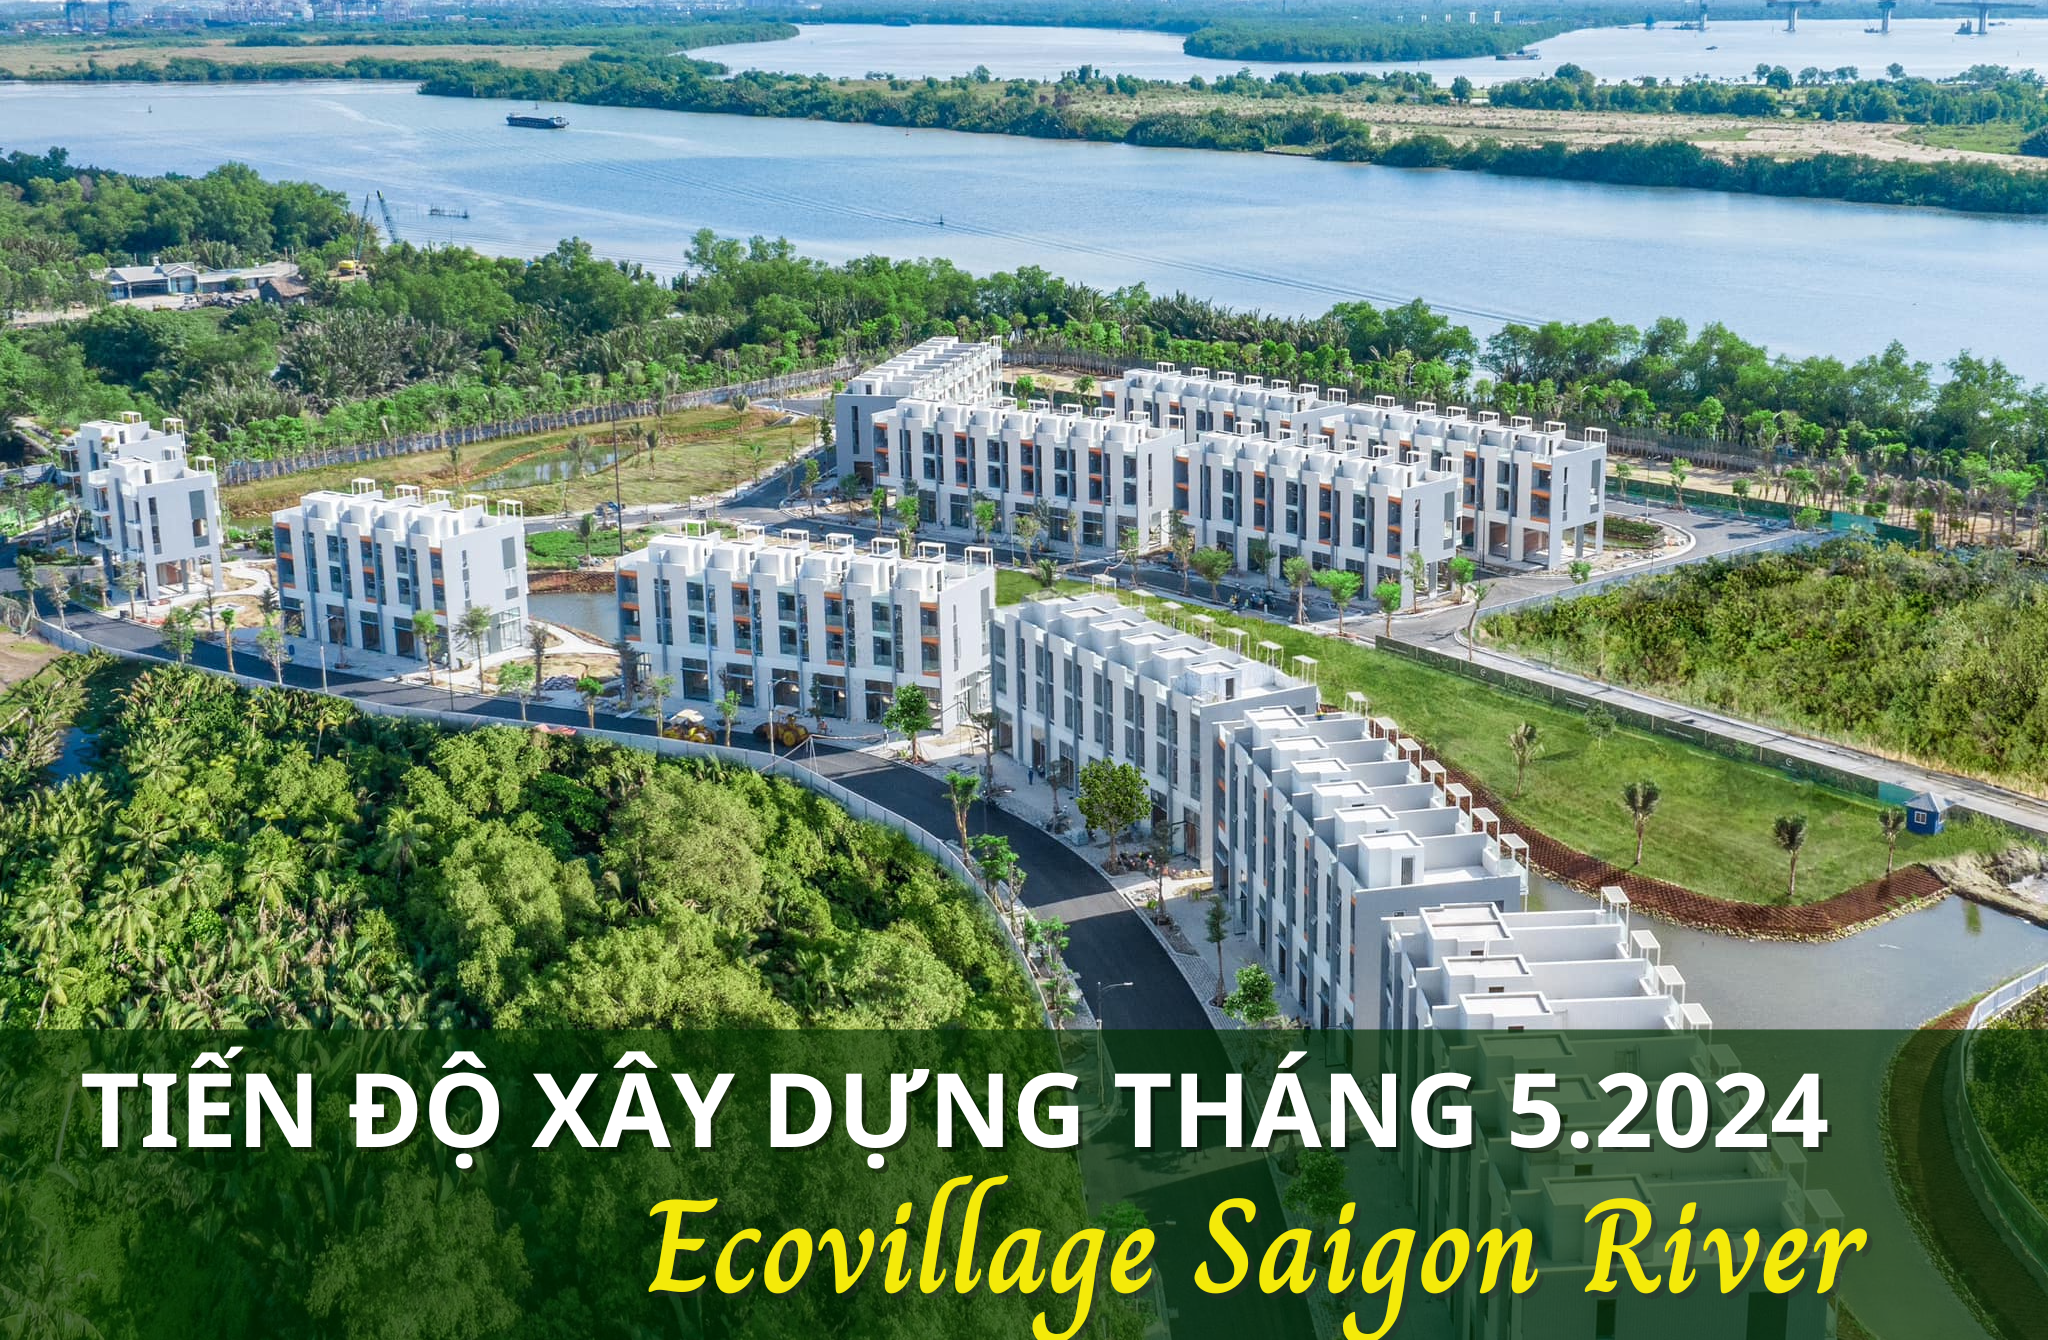 Cập nhật tiến độ Ecovillage Saigon River tháng 5-2024, hệ sinh thái cây xanh ôm trọn từng ngôi nhà